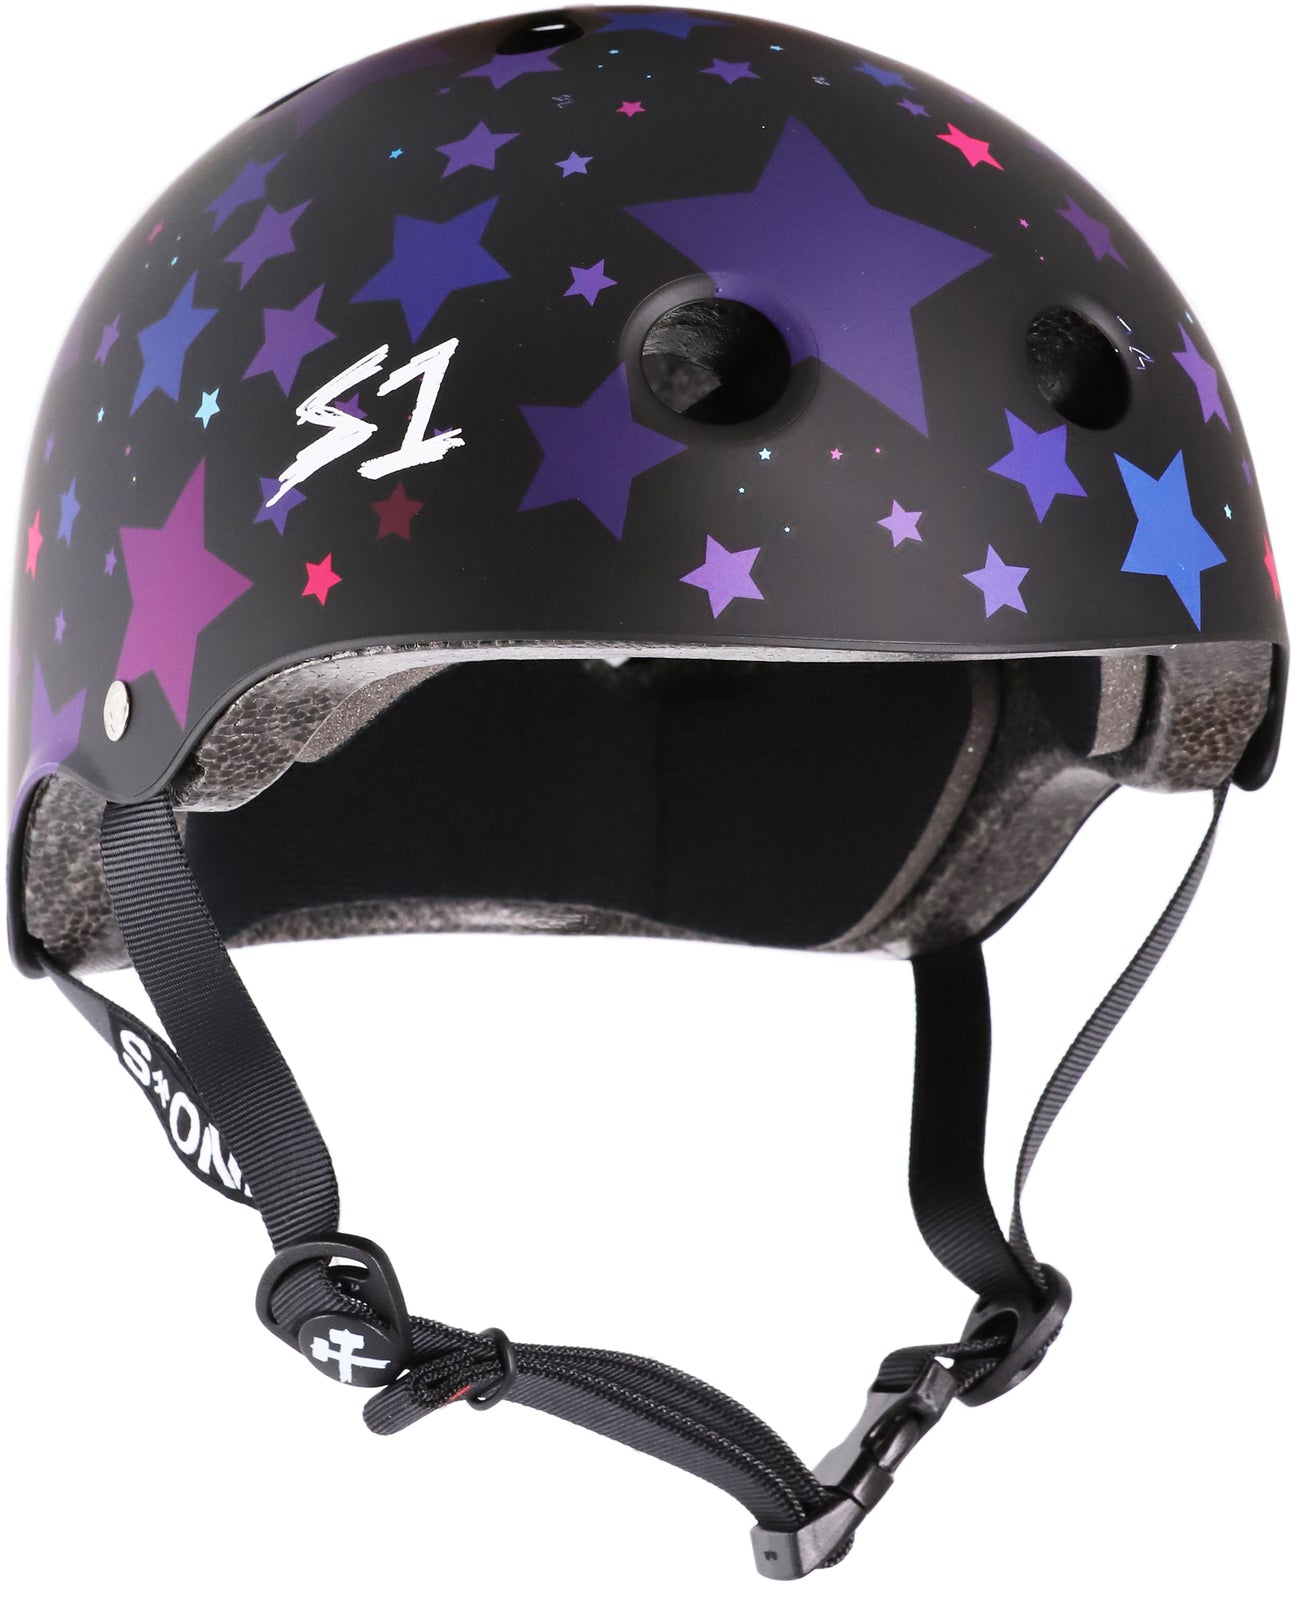 S1 Lifer Helmet - Black Matte Star